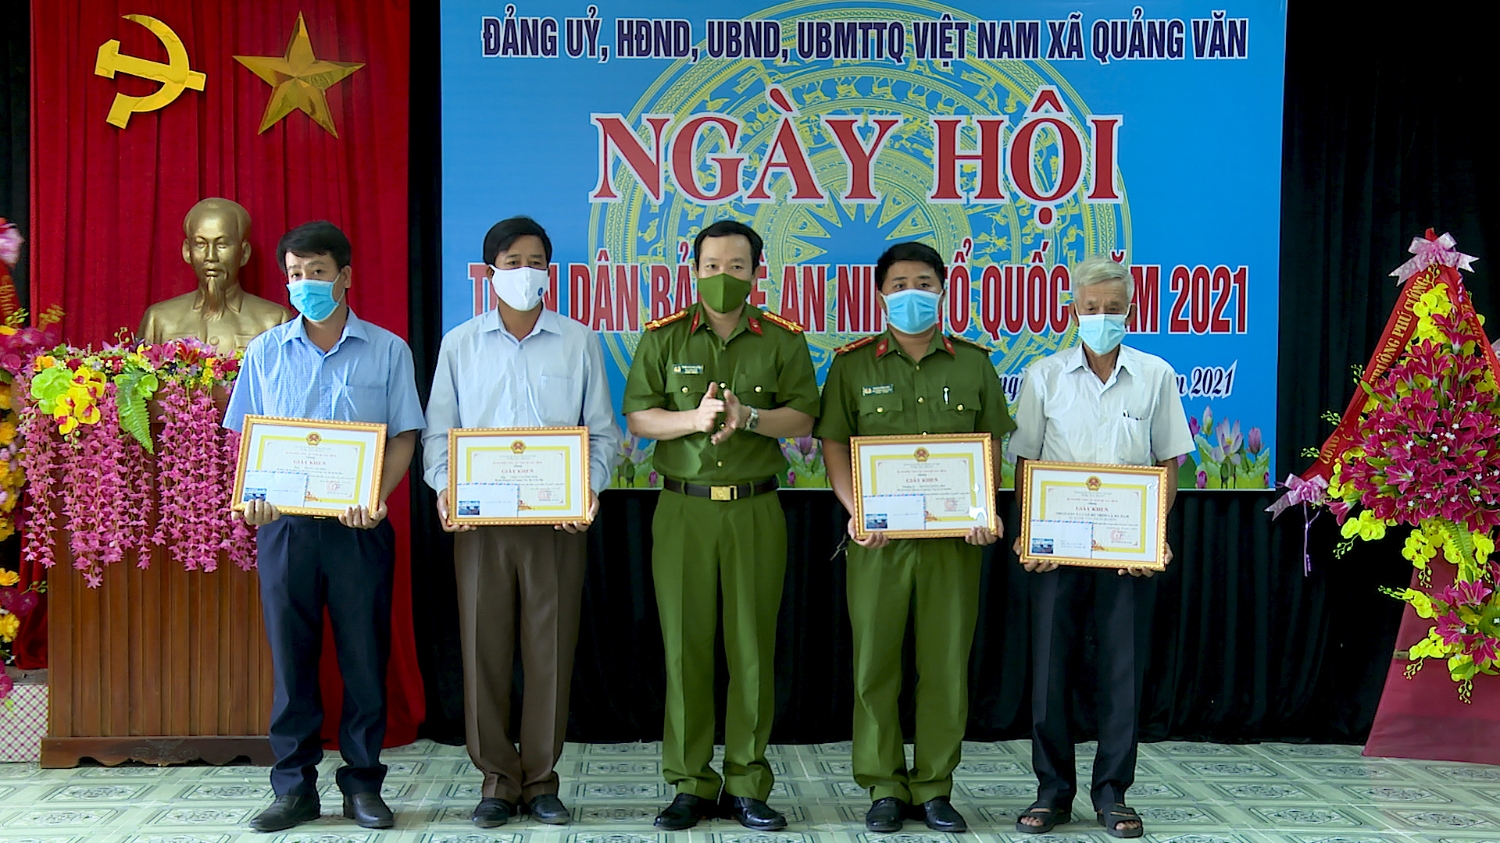 Đại tá Trần Quang Hiếu, Phó giám đốc Công an tỉnh Quảng Bình tặng giấy khen cho 1 tập thể và 3 cá nhân có thành tich tổ chức điểm Ngày hội toàn dân bảo vệ ANTQ năm 2021